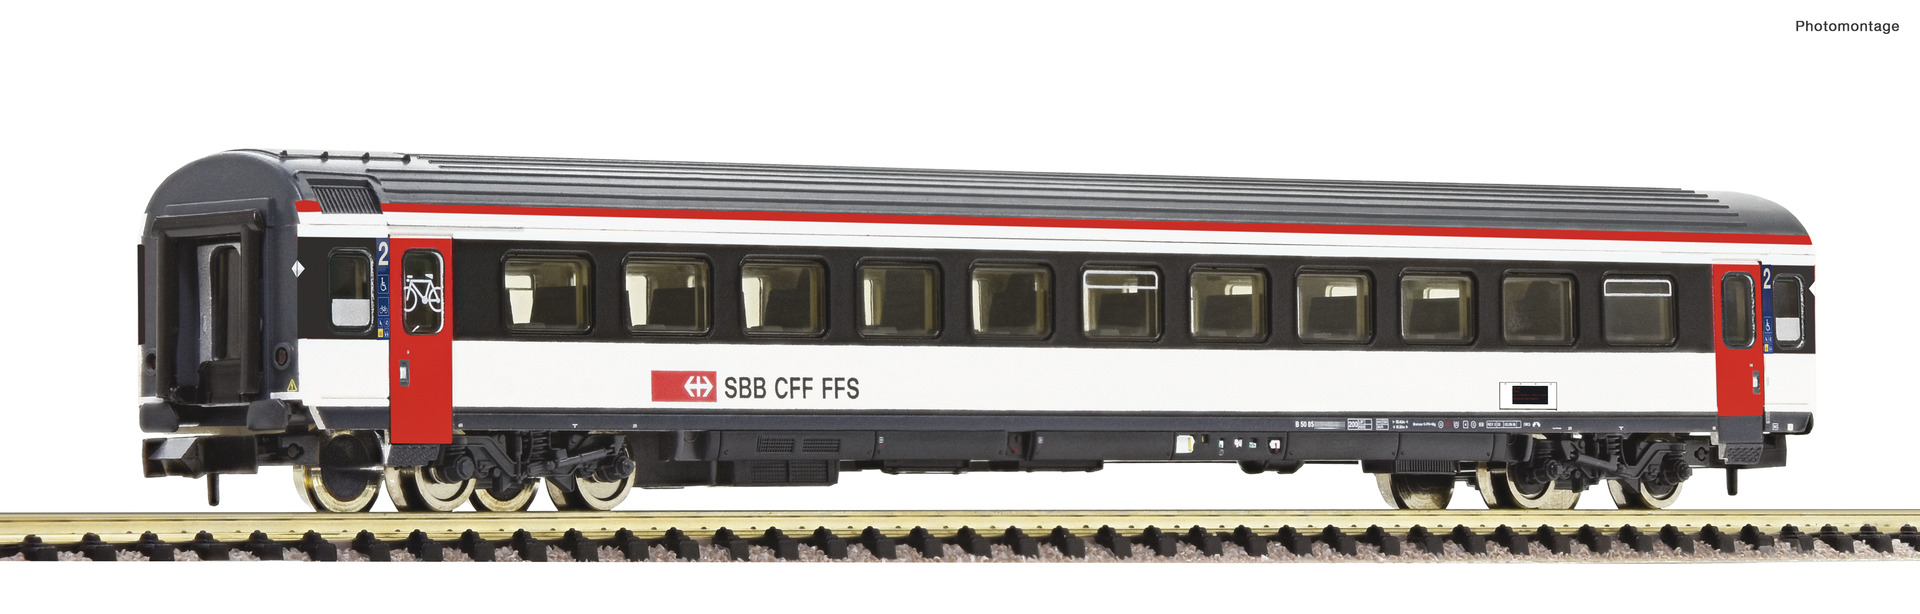 Fleischmann 6260016, Spur N, SBB Reisezugwagen 2. Klasse, EW IV, Ep. VI